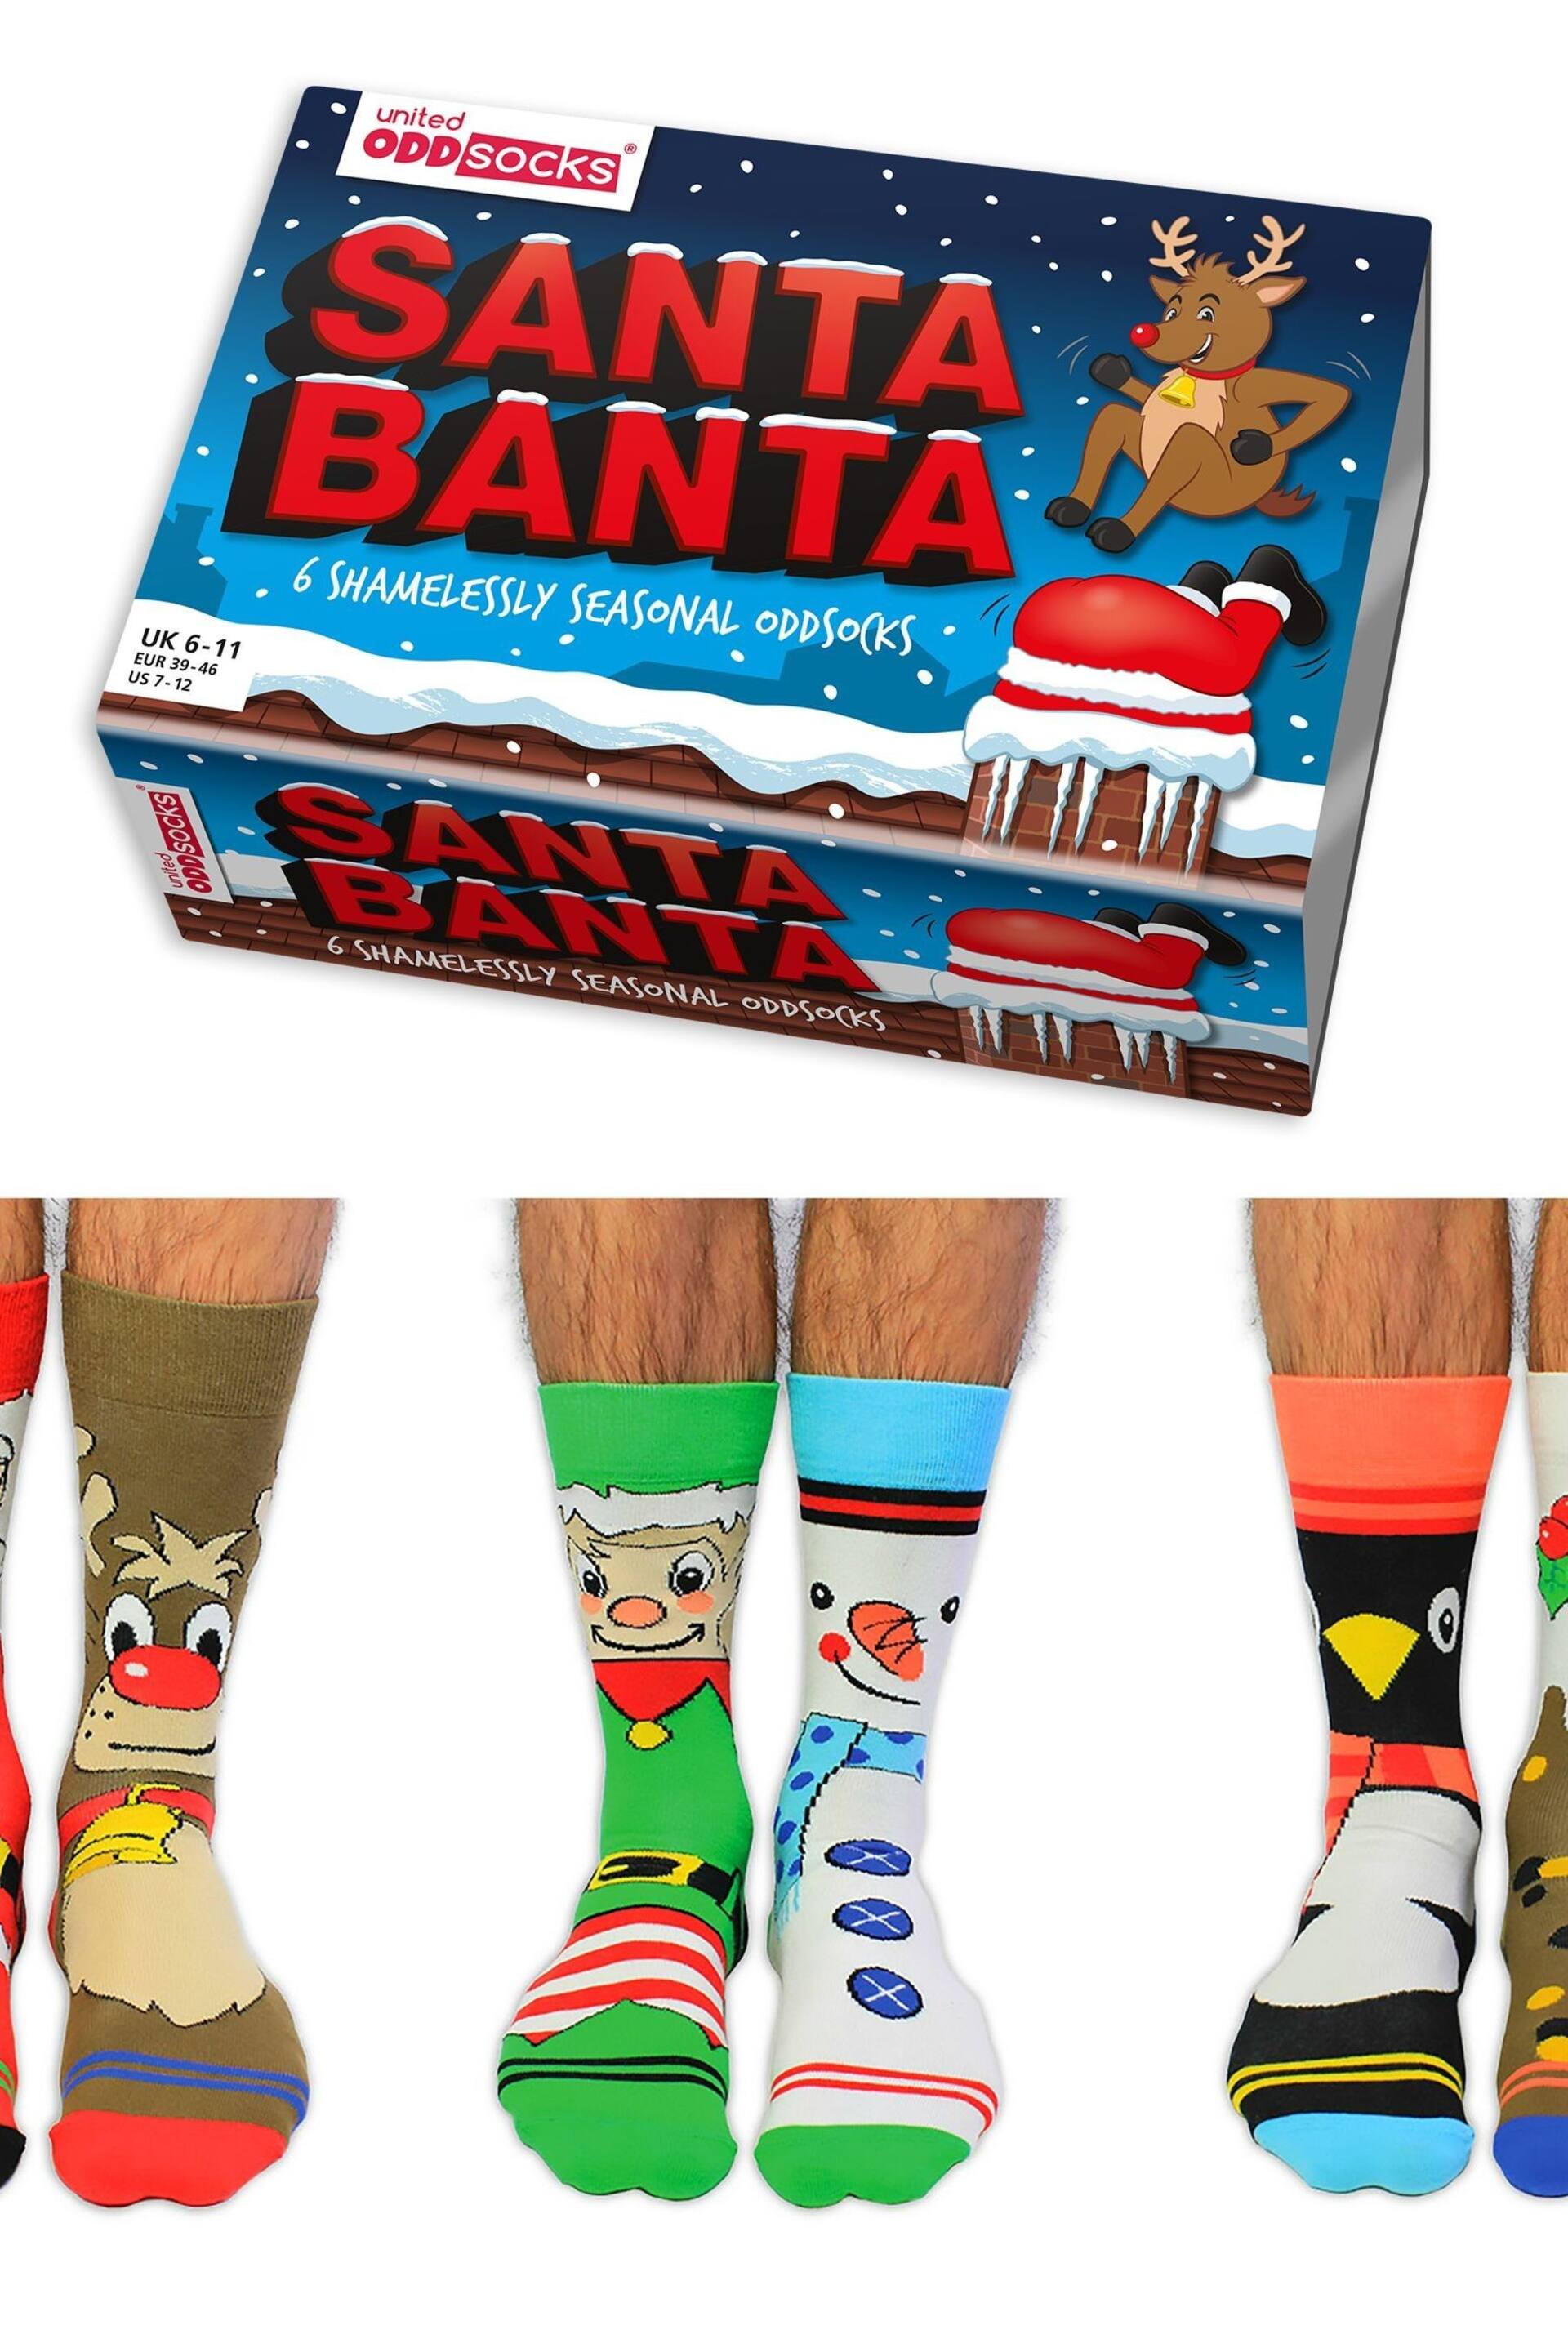 United Odd Socks Multi Santa Banta Christmas Santa Banta Socks - Image 1 of 11